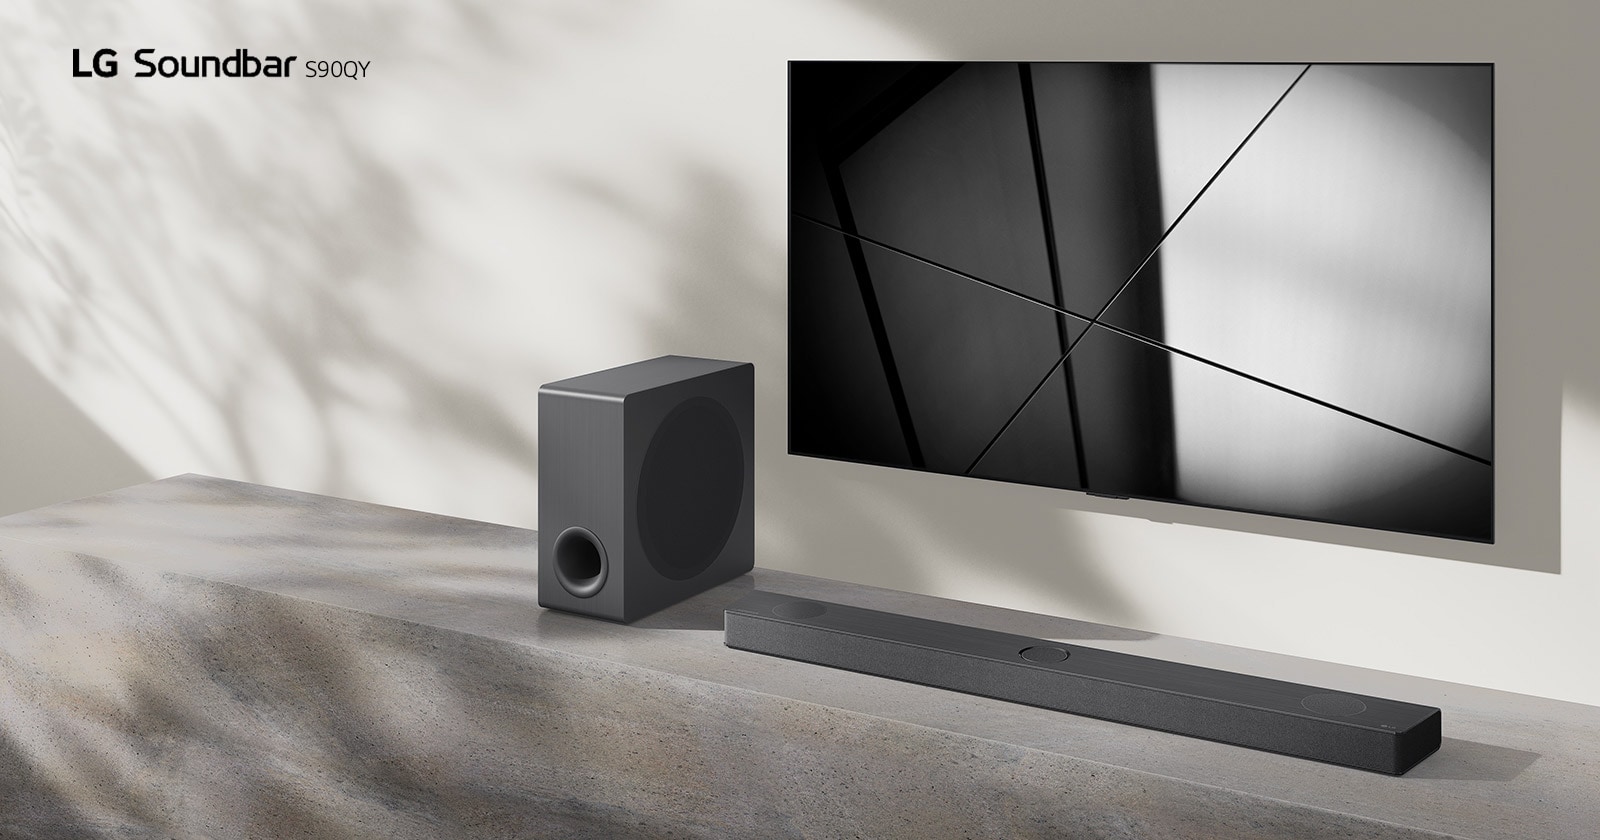 Die LG Soundbar DS80QY und ein LG TV sind zusammen in einem Wohnzimmer aufgestellt. Der Fernseher ist eingeschaltet und zeigt ein Schwarzweißbild an.